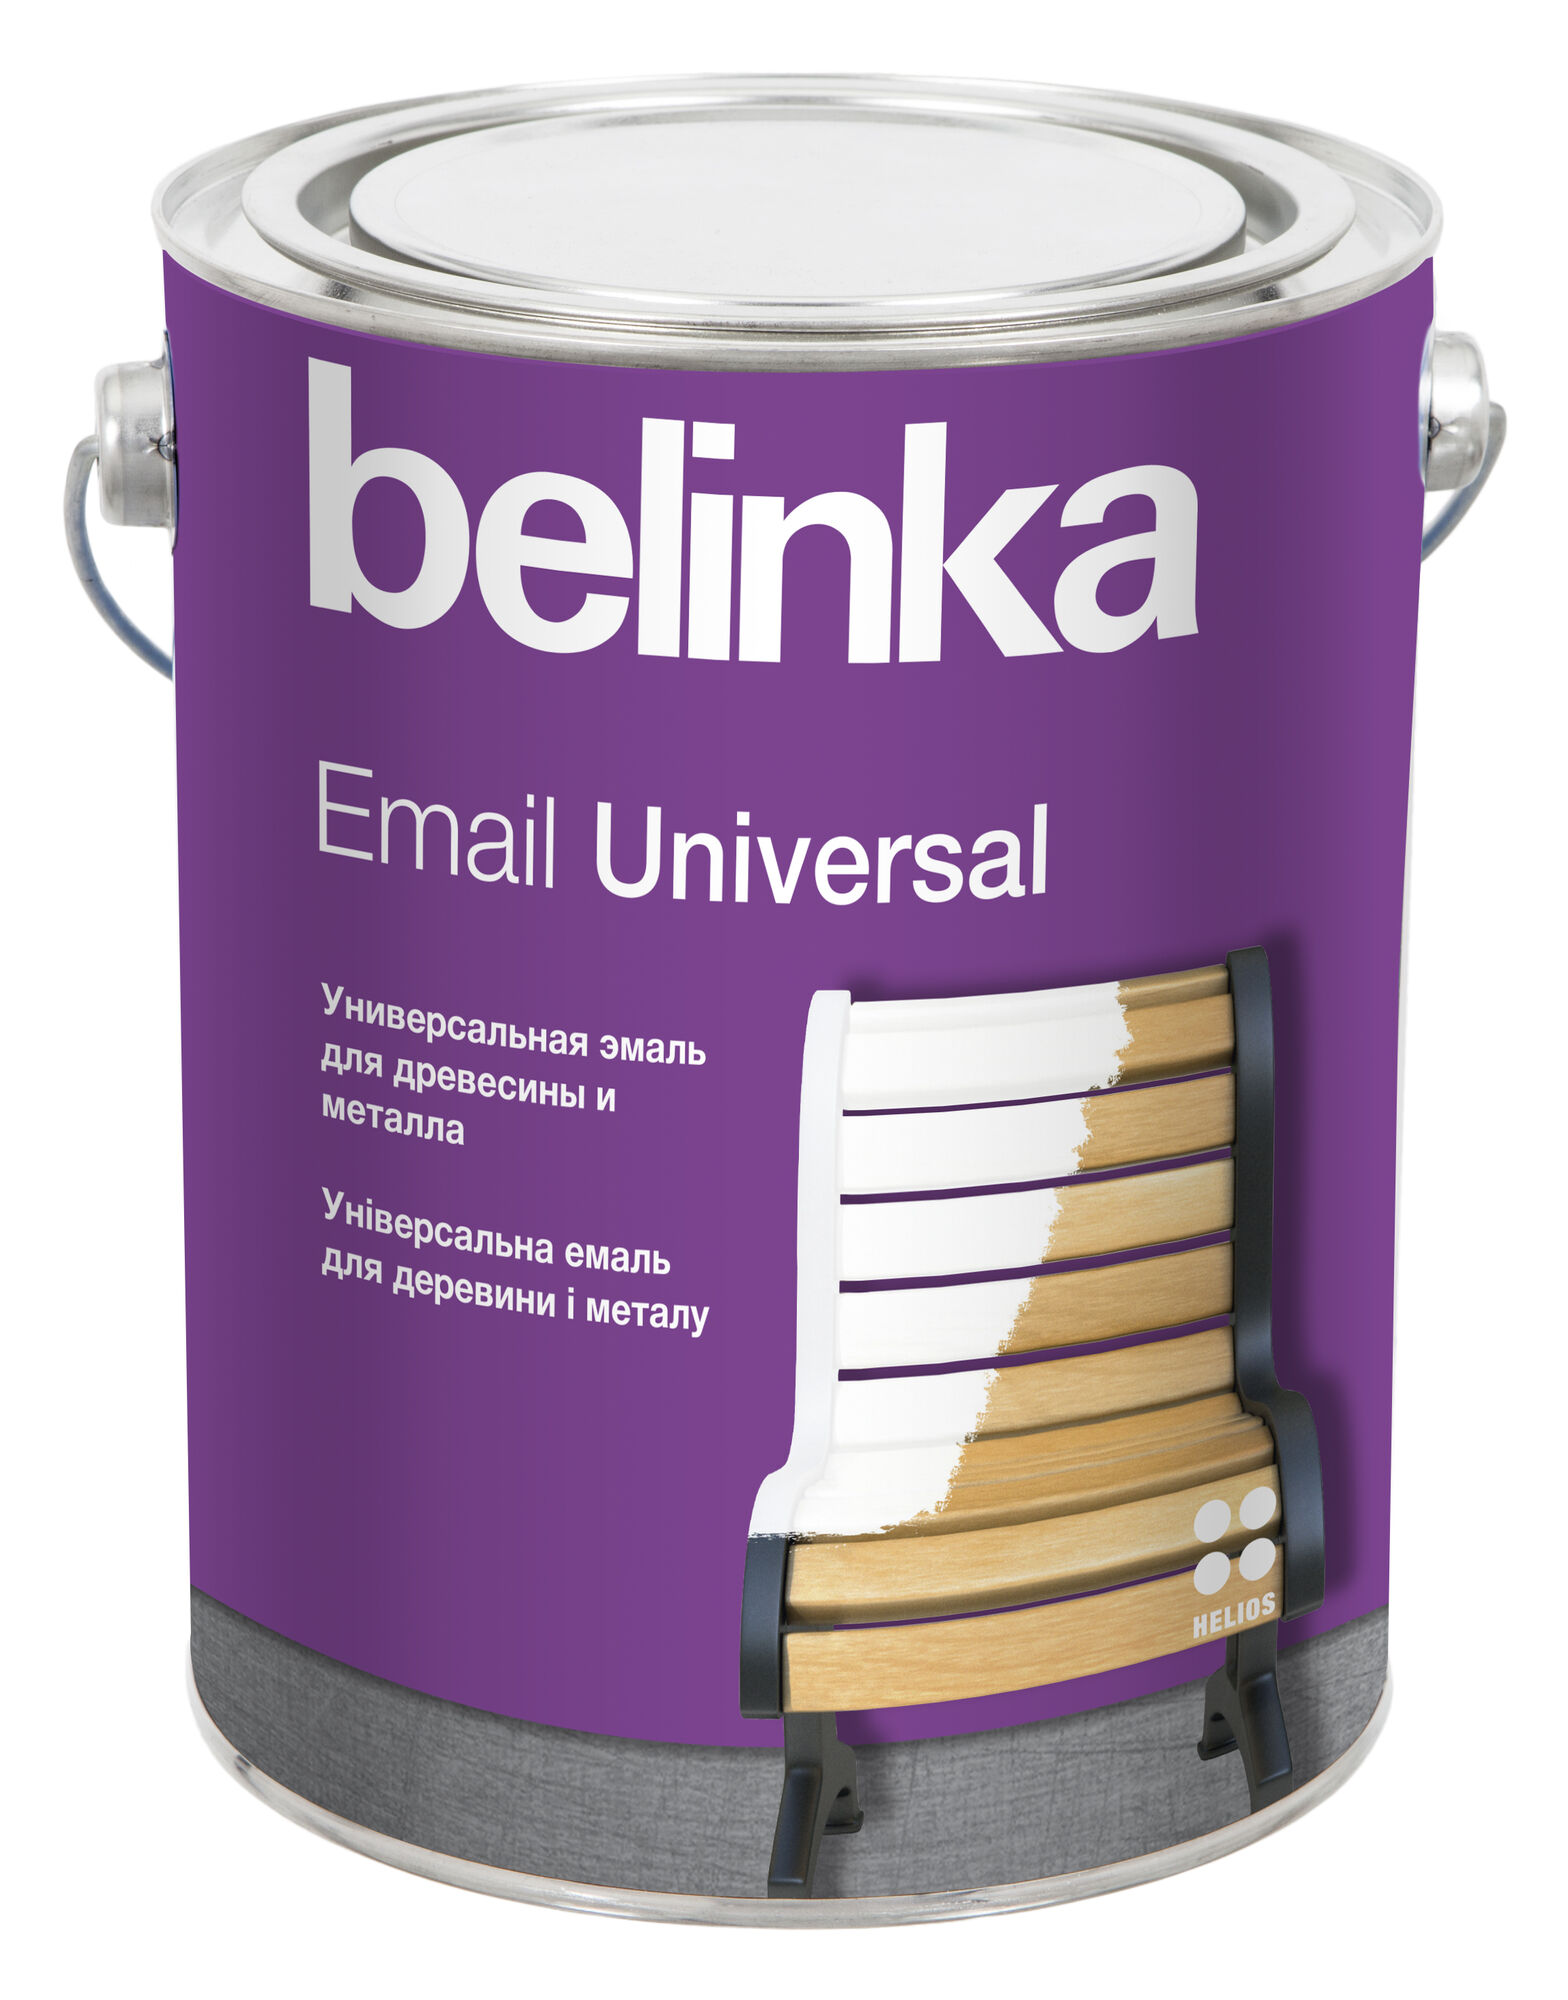 Эмаль универсальная Email Universal Belinka B3 2,7 л Полуматовая